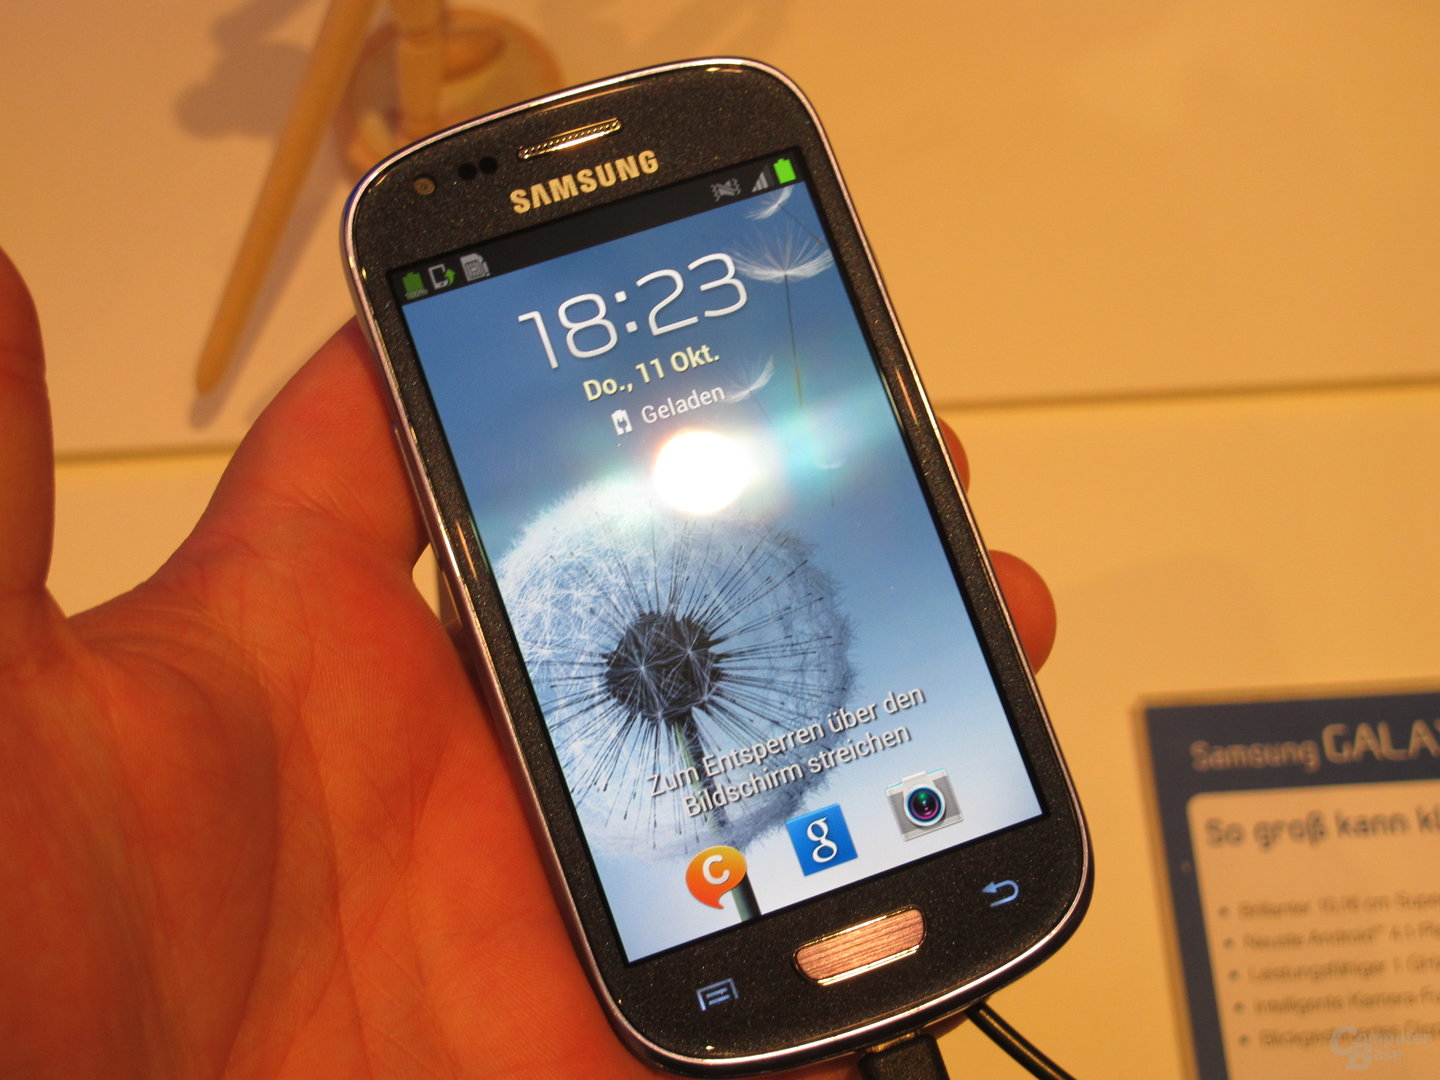 Samsung Galaxy S III Mini